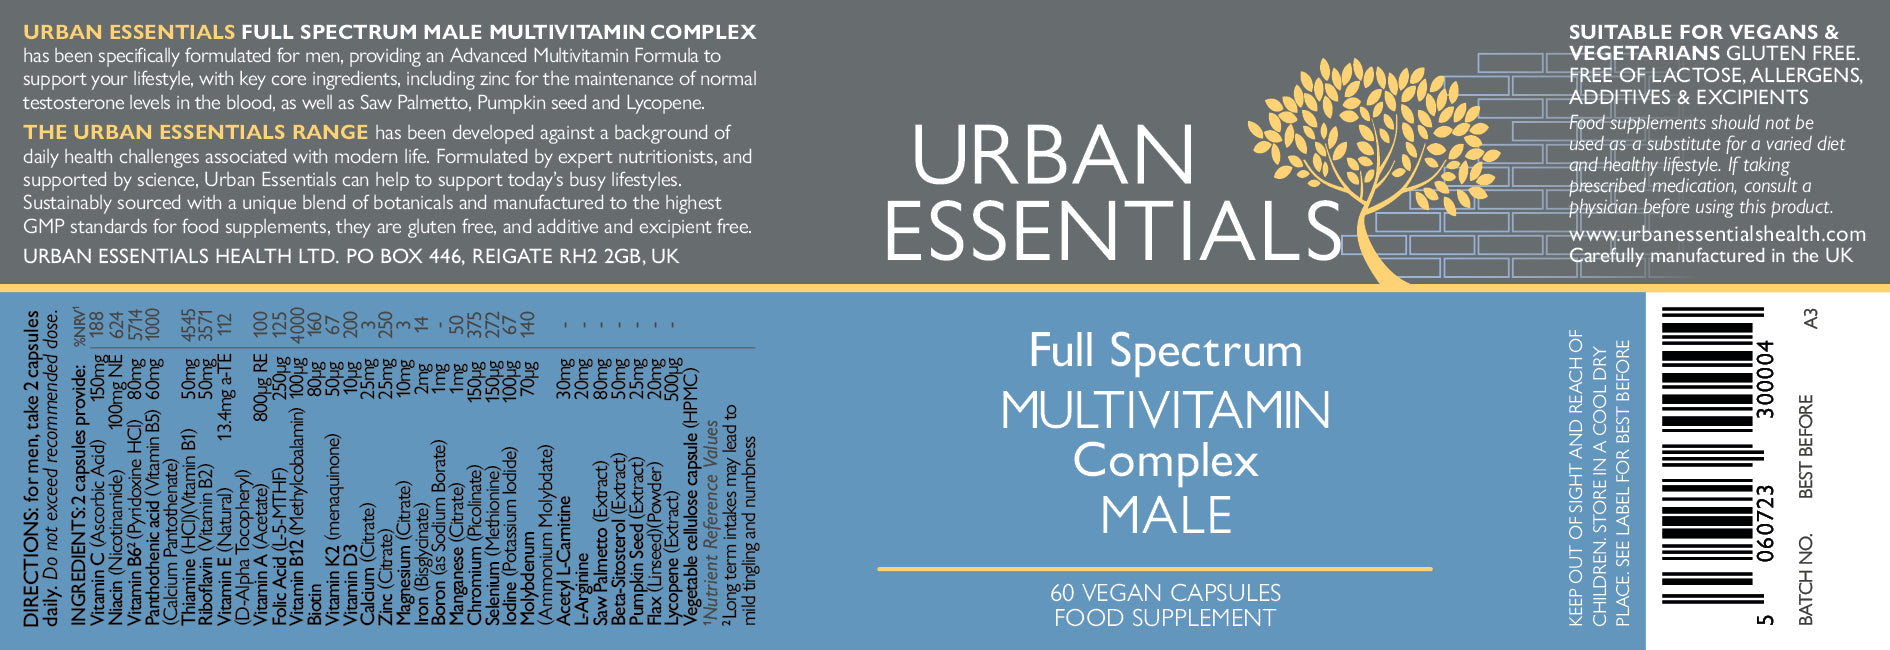 Urban Essentials Full Spectrum Multivitamin Complex Male 60's